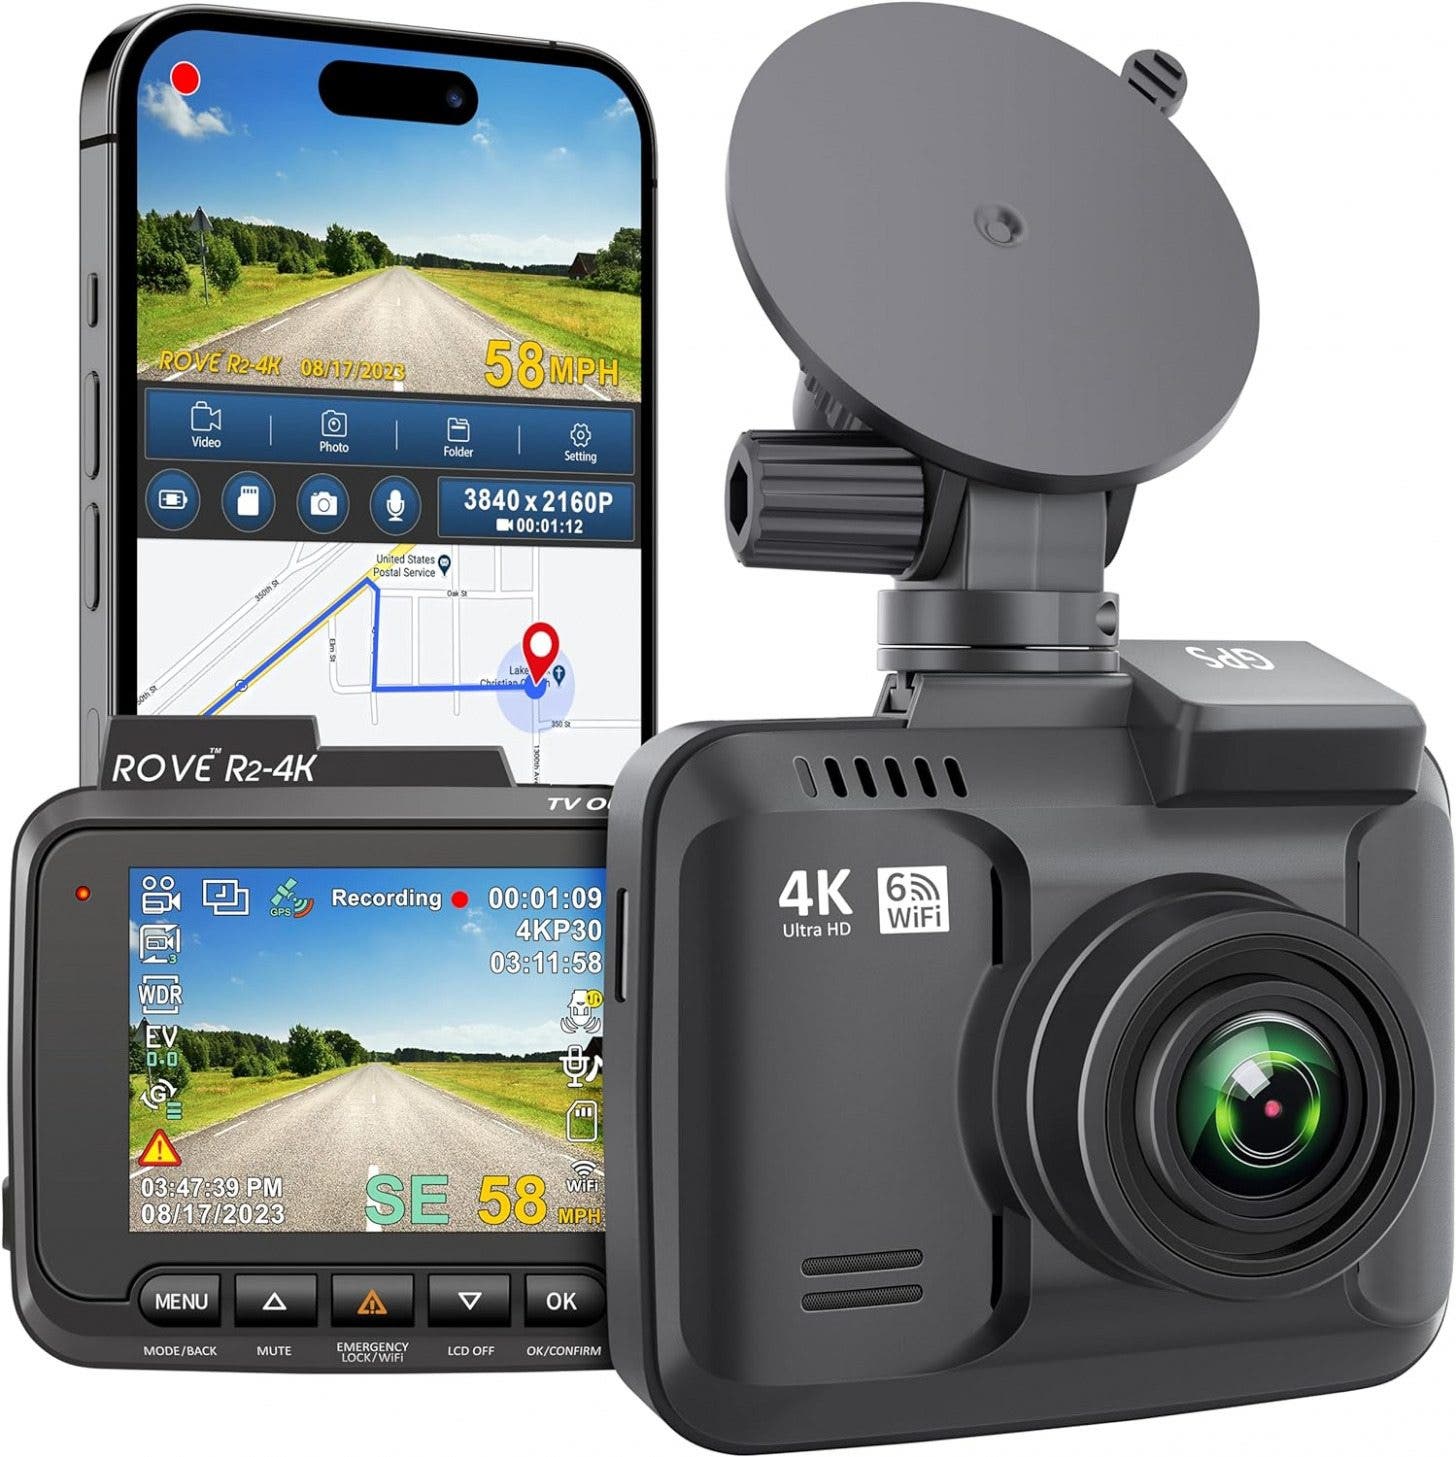 Přístrojová kamera Rove R2-4K s vestavěnou WiFi a GPS (19,99 EUR)